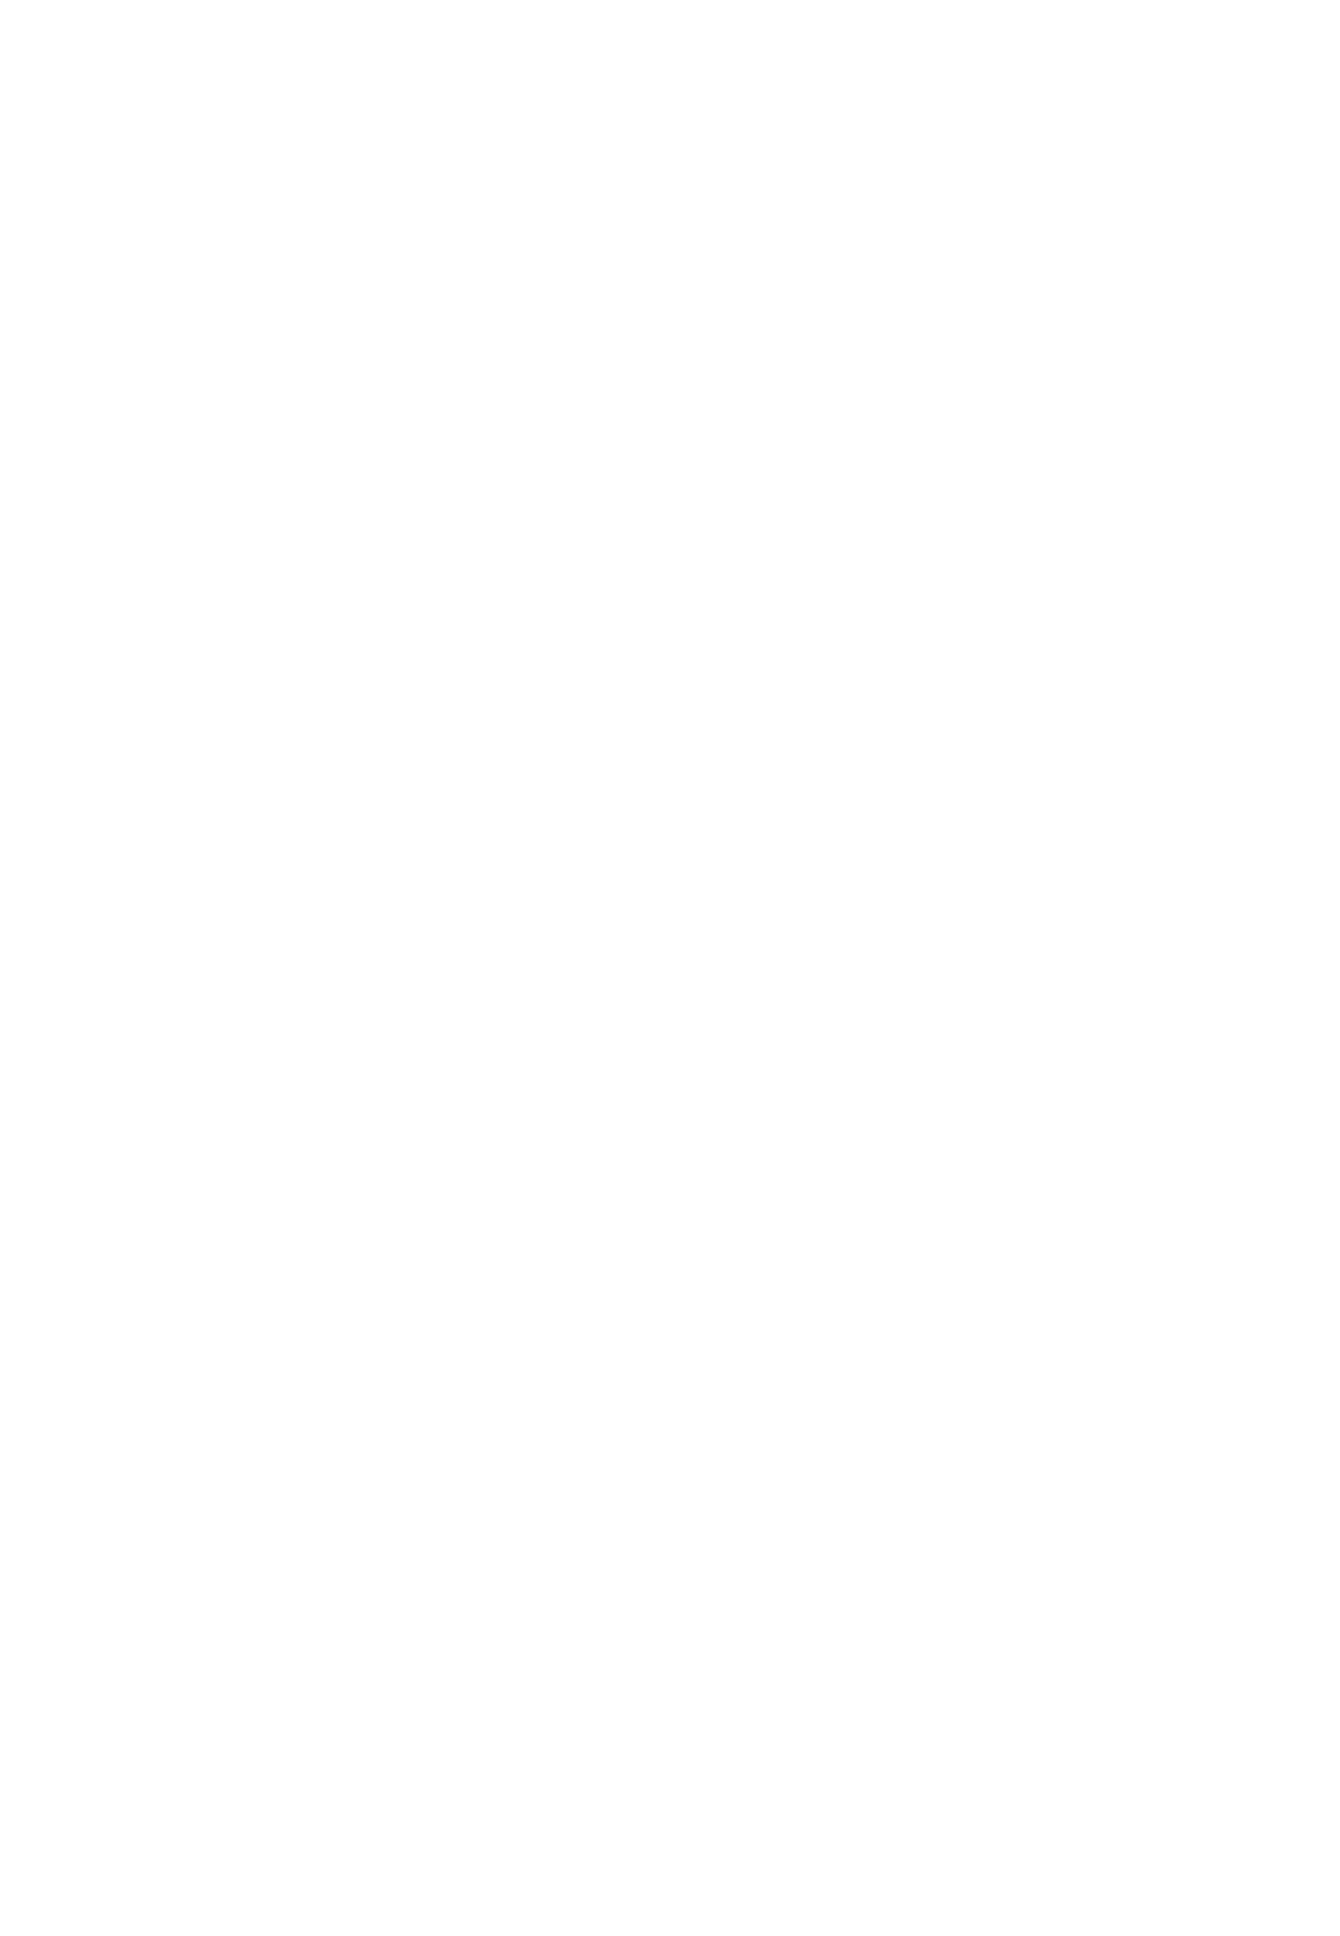 Rhythmic Gymnast Silhouettewith Ribbon